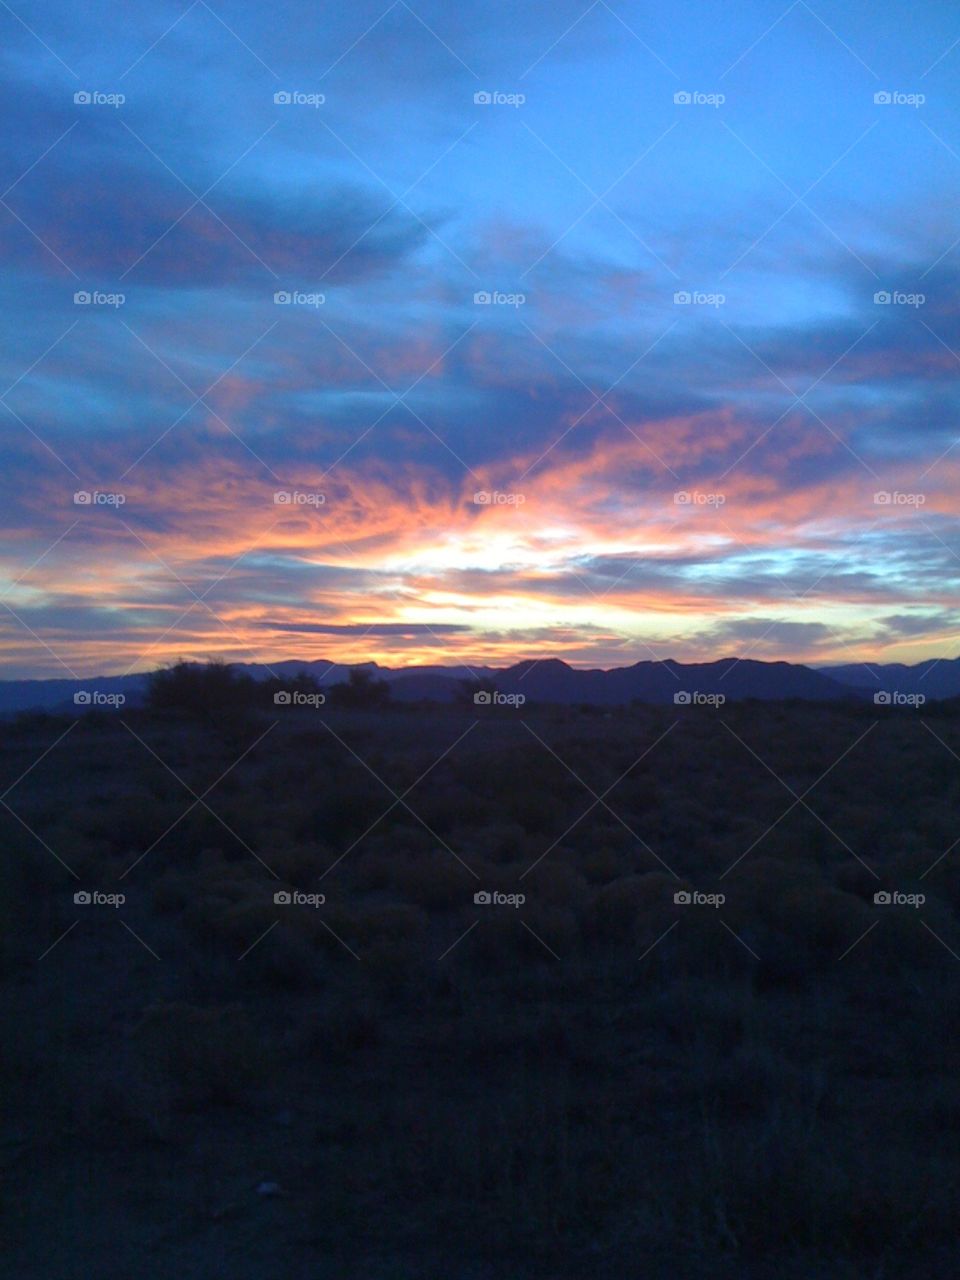 Arizona Dusk. Arizona Sunset